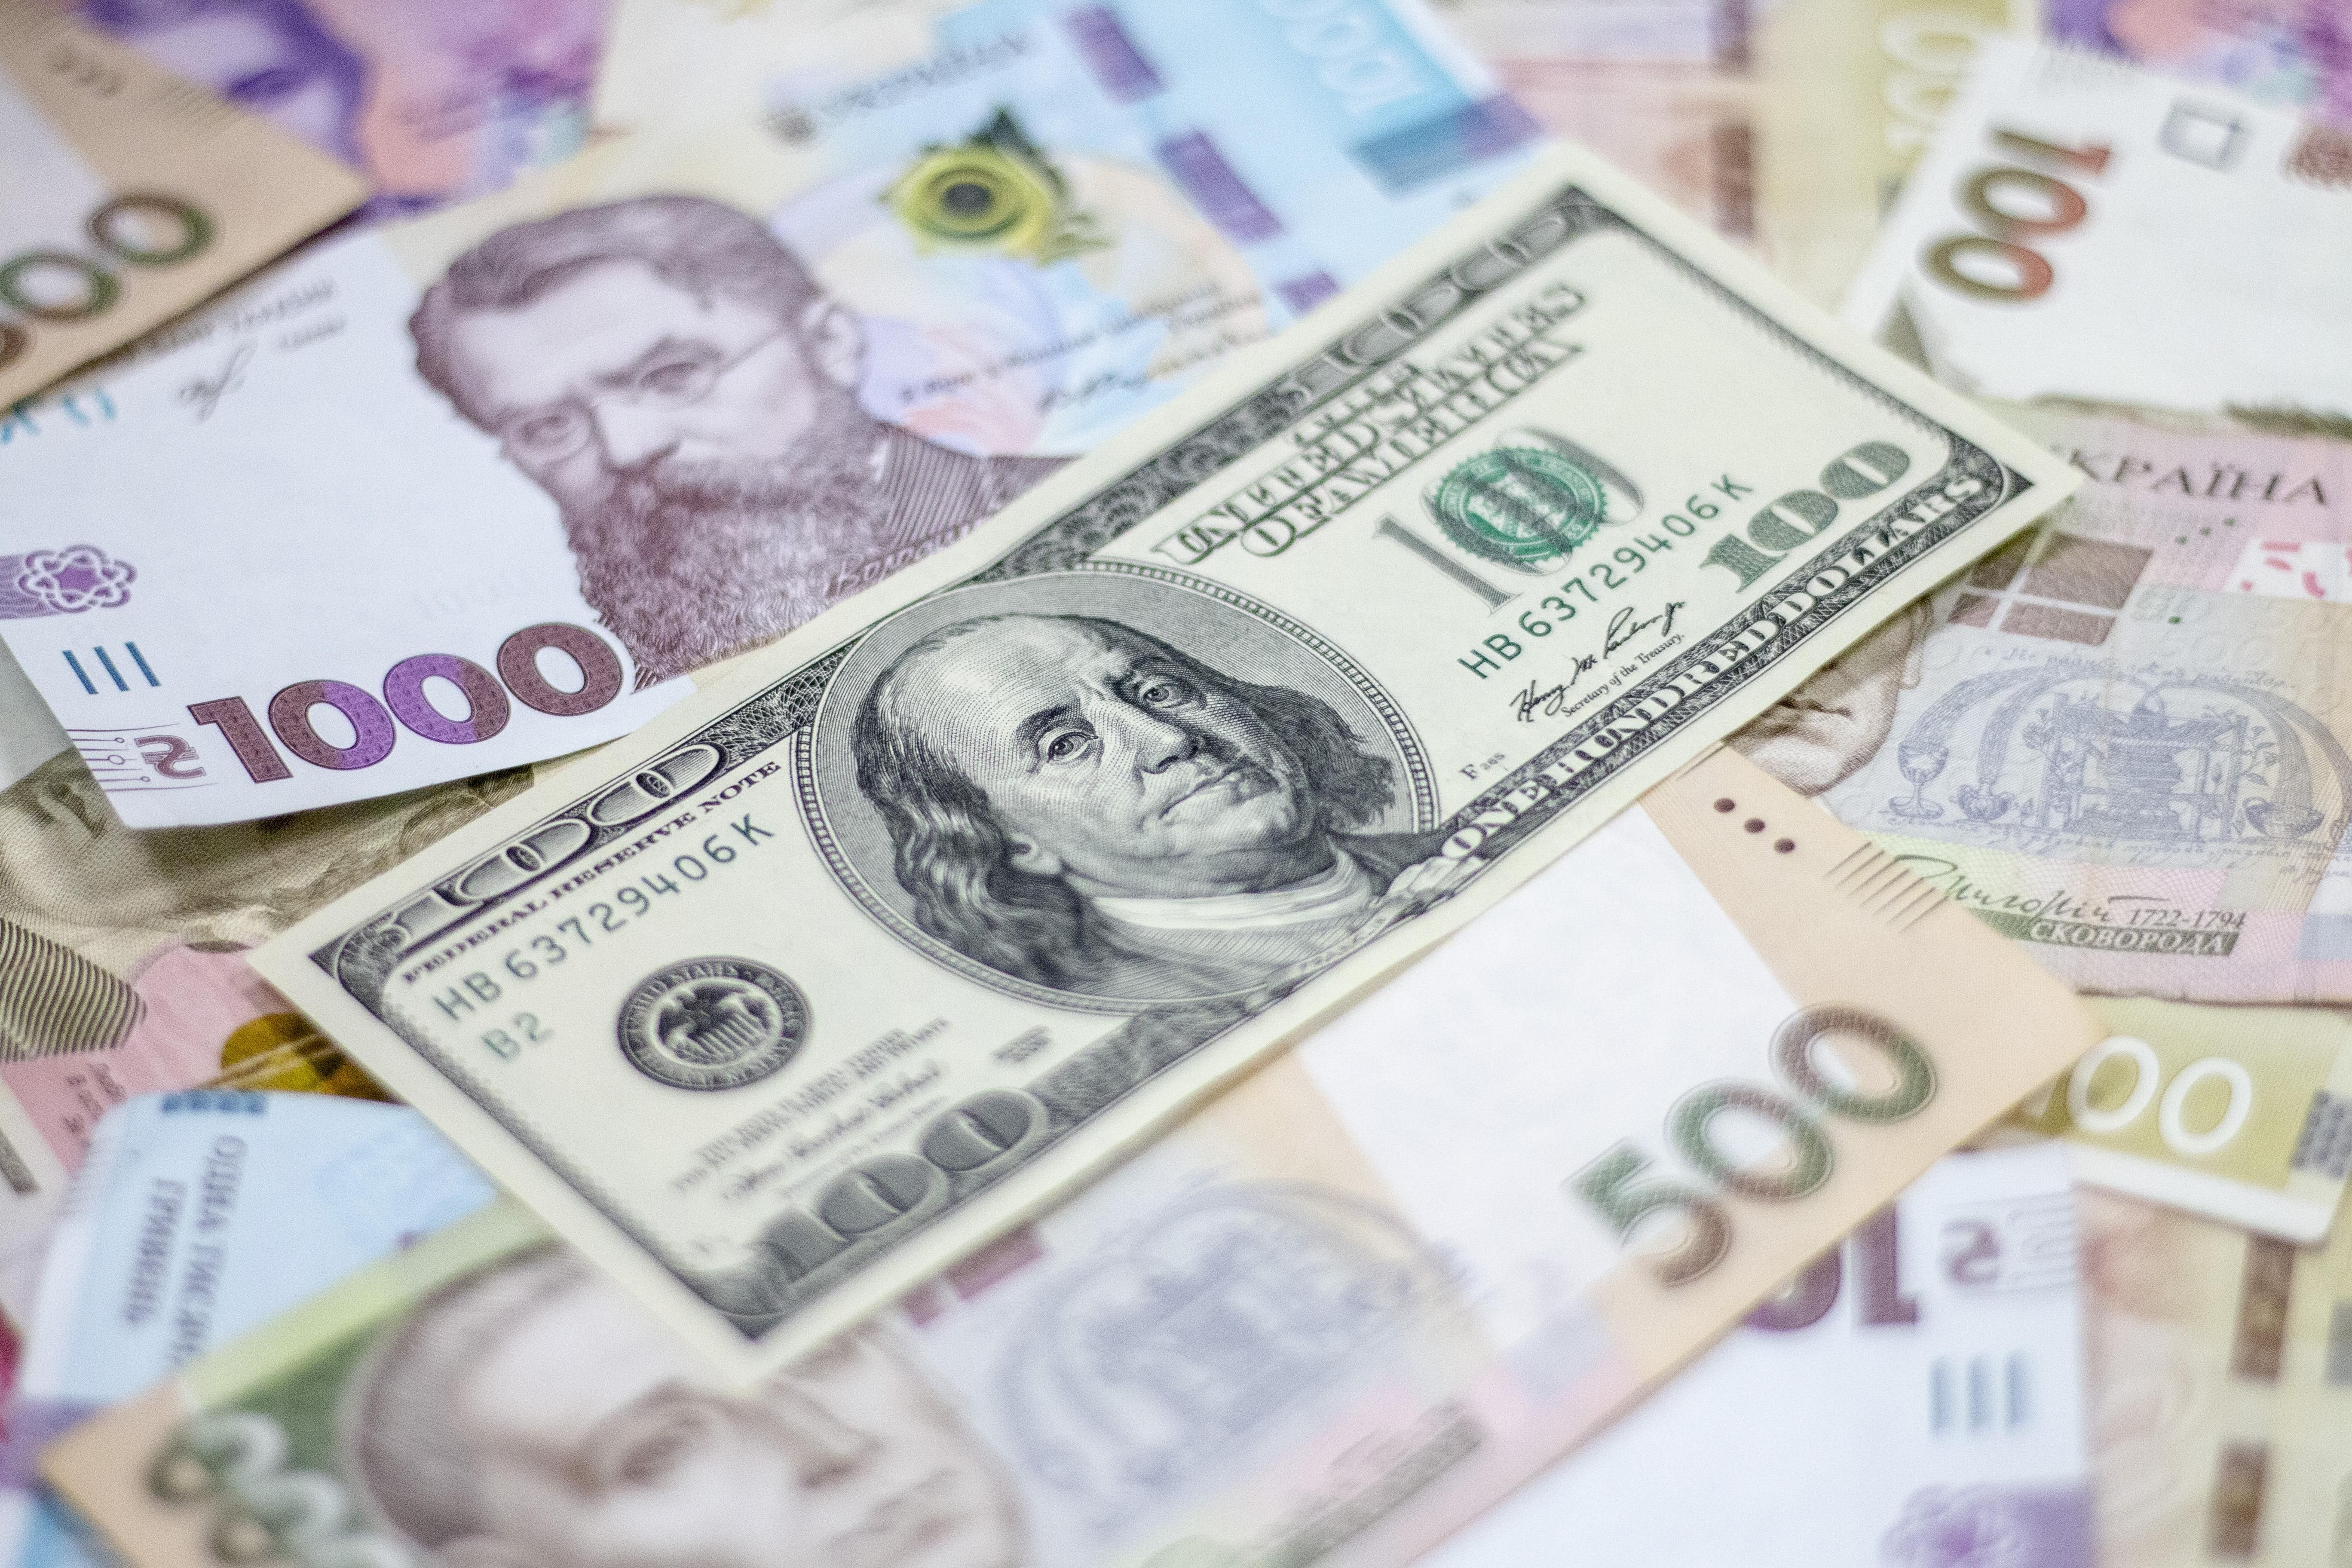 Українські банки отримали рекордний прибуток за 10 років - новини НБУ - Економіка